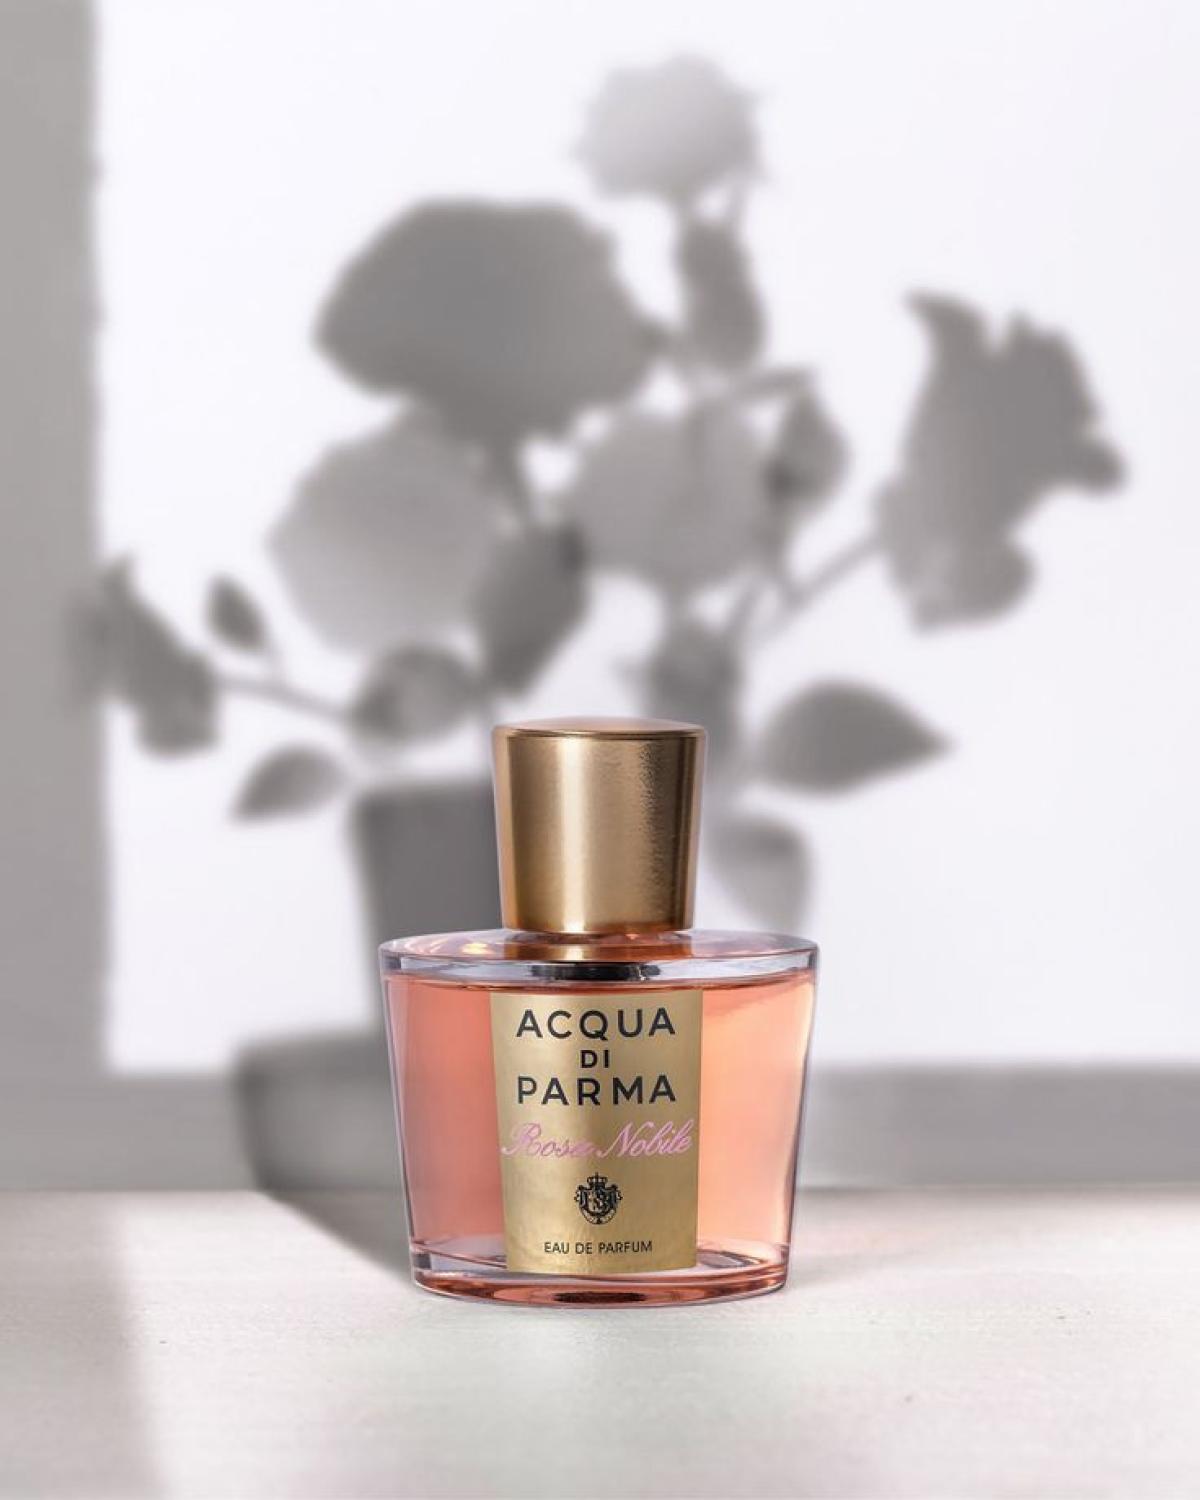 Rosa Nobile Acqua di Parma perfume - a fragrance for women 2014